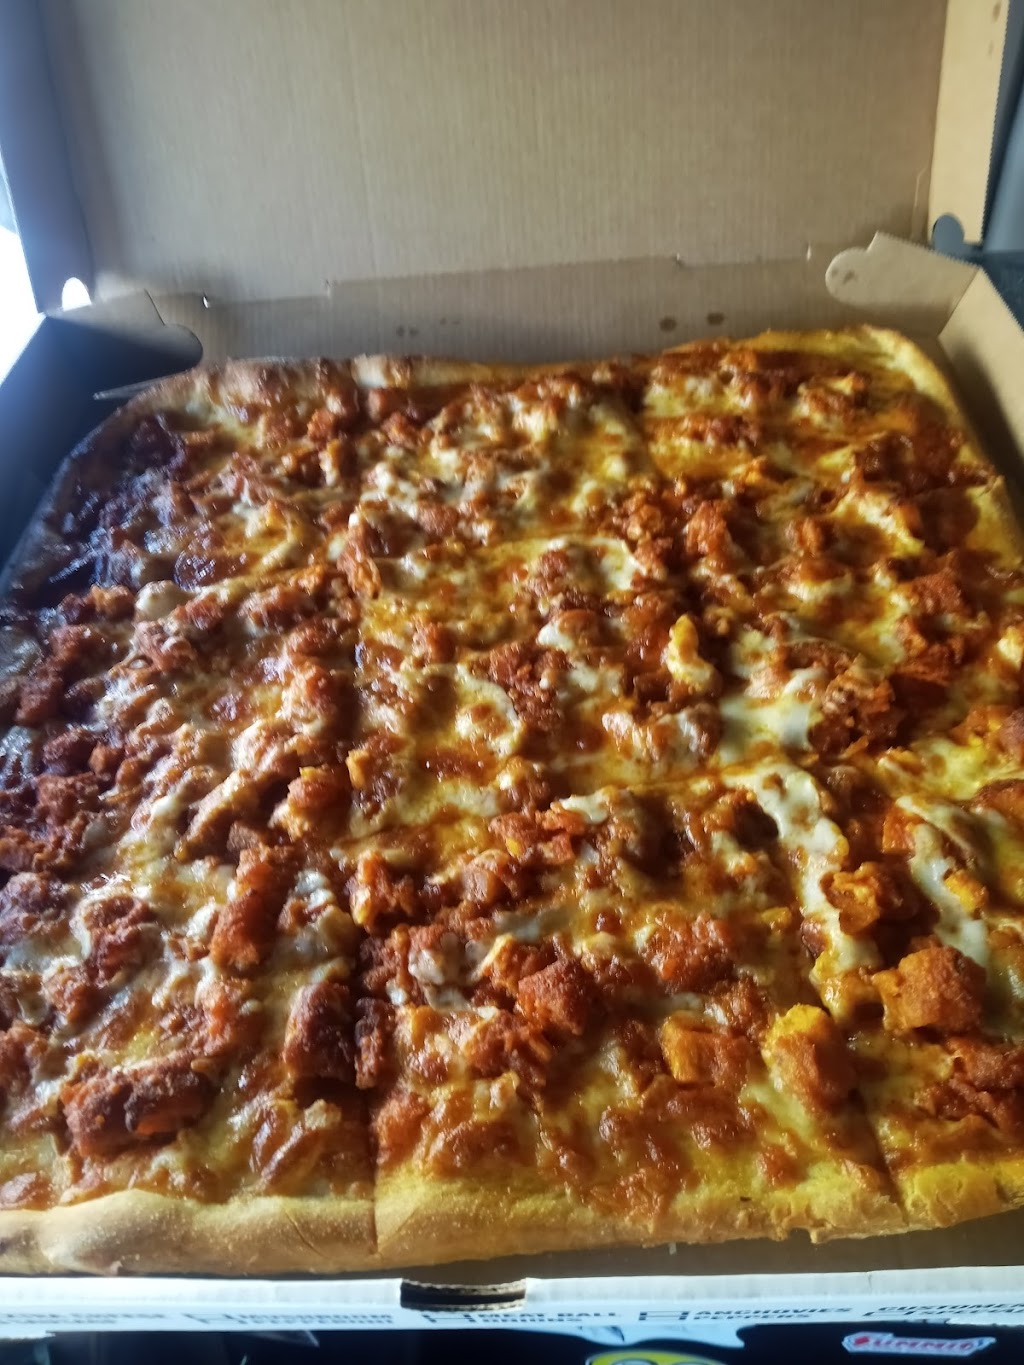 Jays Pizza & Eats (Congers) | 285 NY-303, Congers, NY 10920, USA | Phone: (845) 767-4222